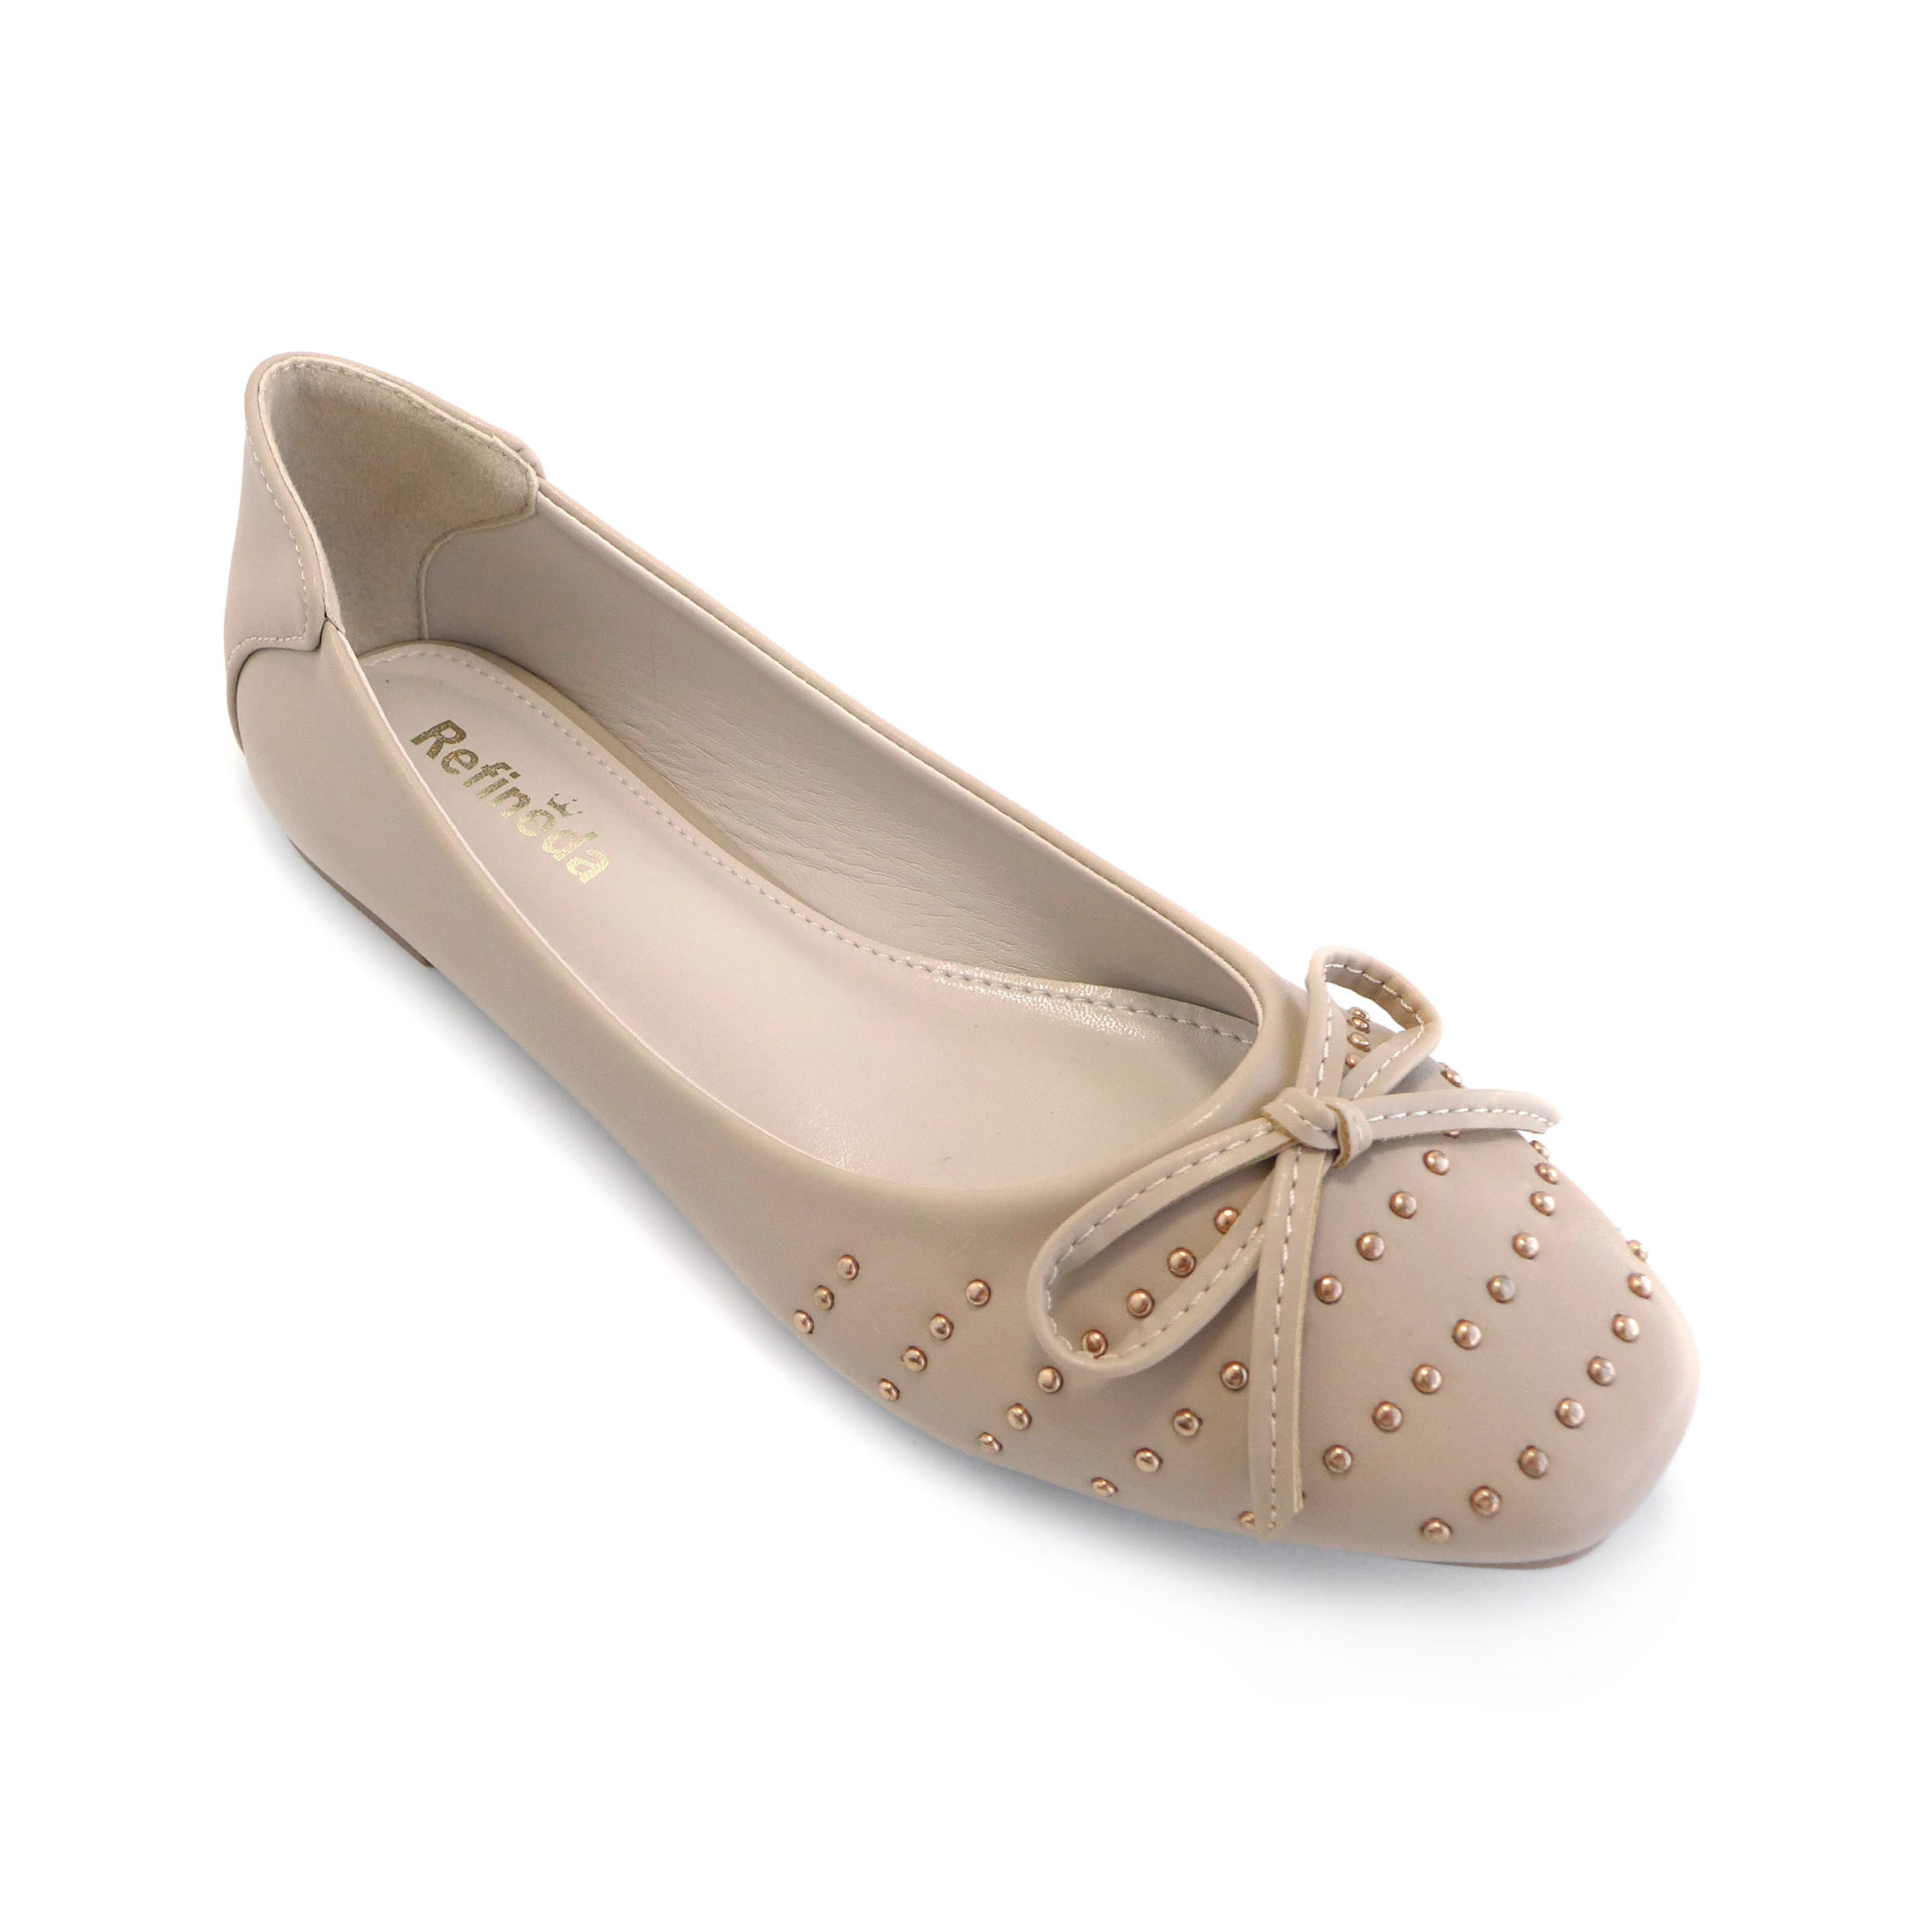 Refineda အမျိုးသမီးတစ်ဦးတည်း-ရိုးရှင်းသော Ballerina လမ်းလျှောက် Flats ဖိနပ်